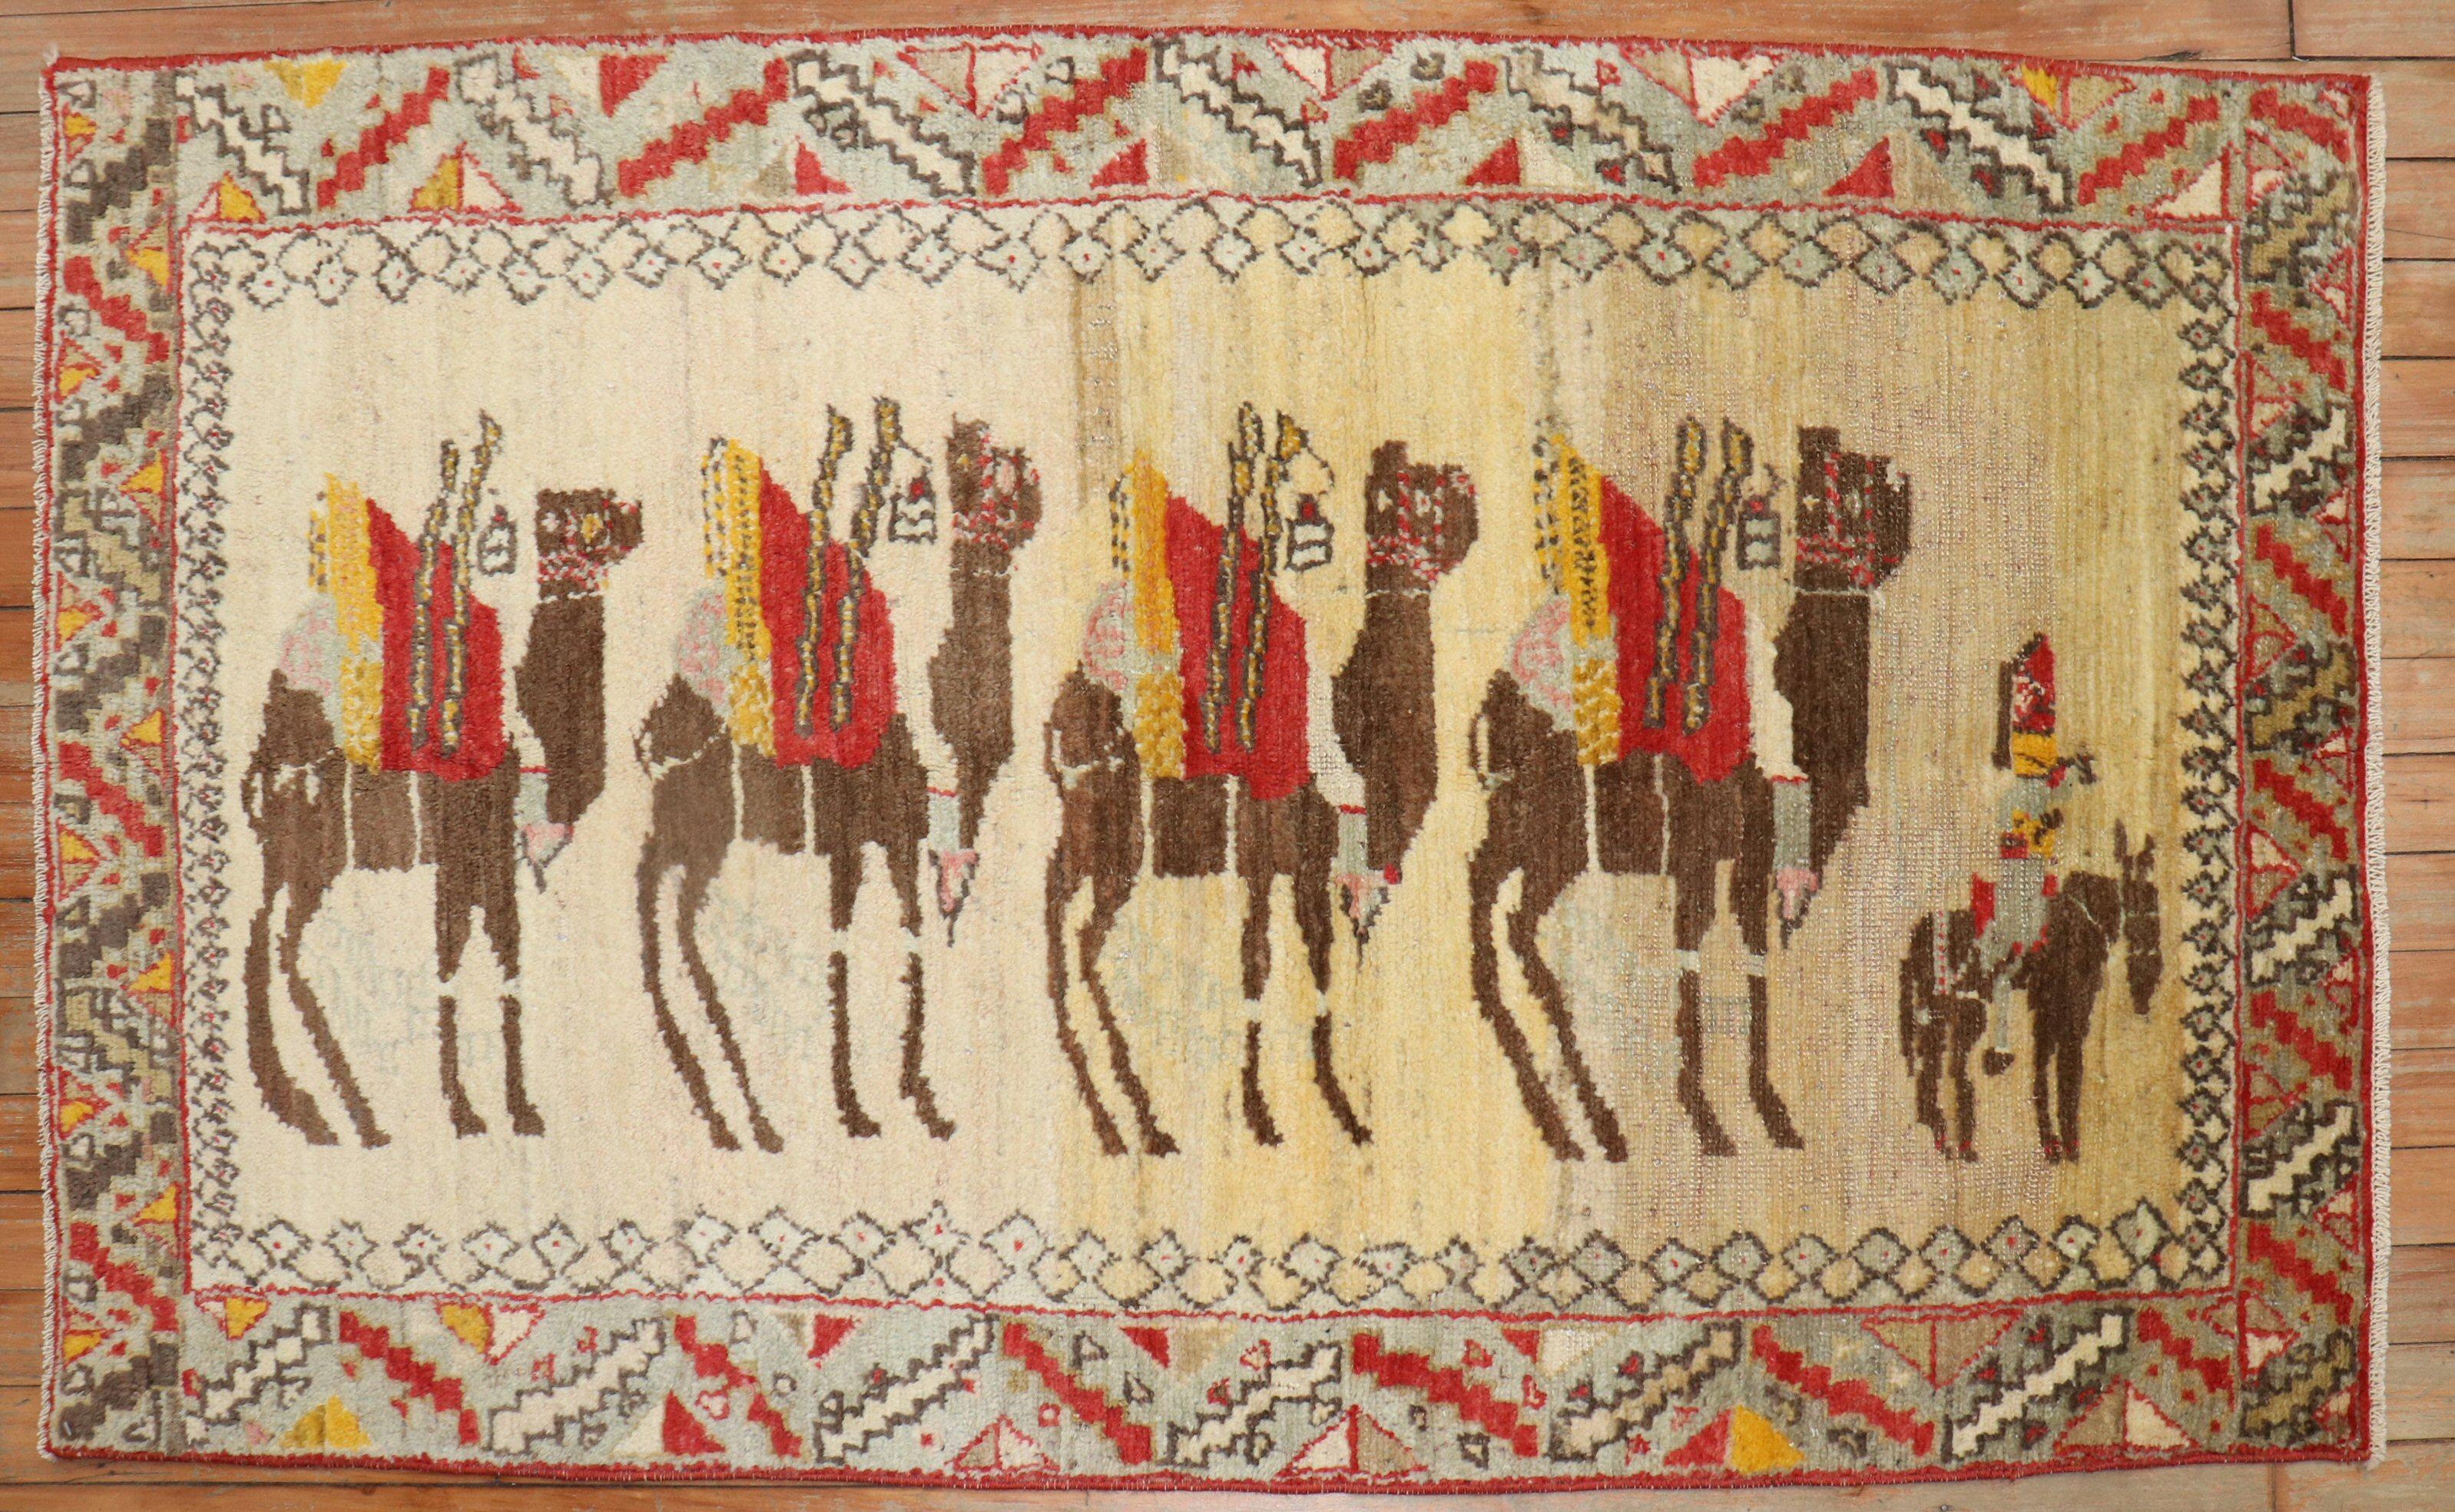 Türkischer anatolischer Teppich aus der Mitte des 20. Jahrhunderts mit malerischem Eselsmotiv

Größe: 2'9'' x 4'9''.